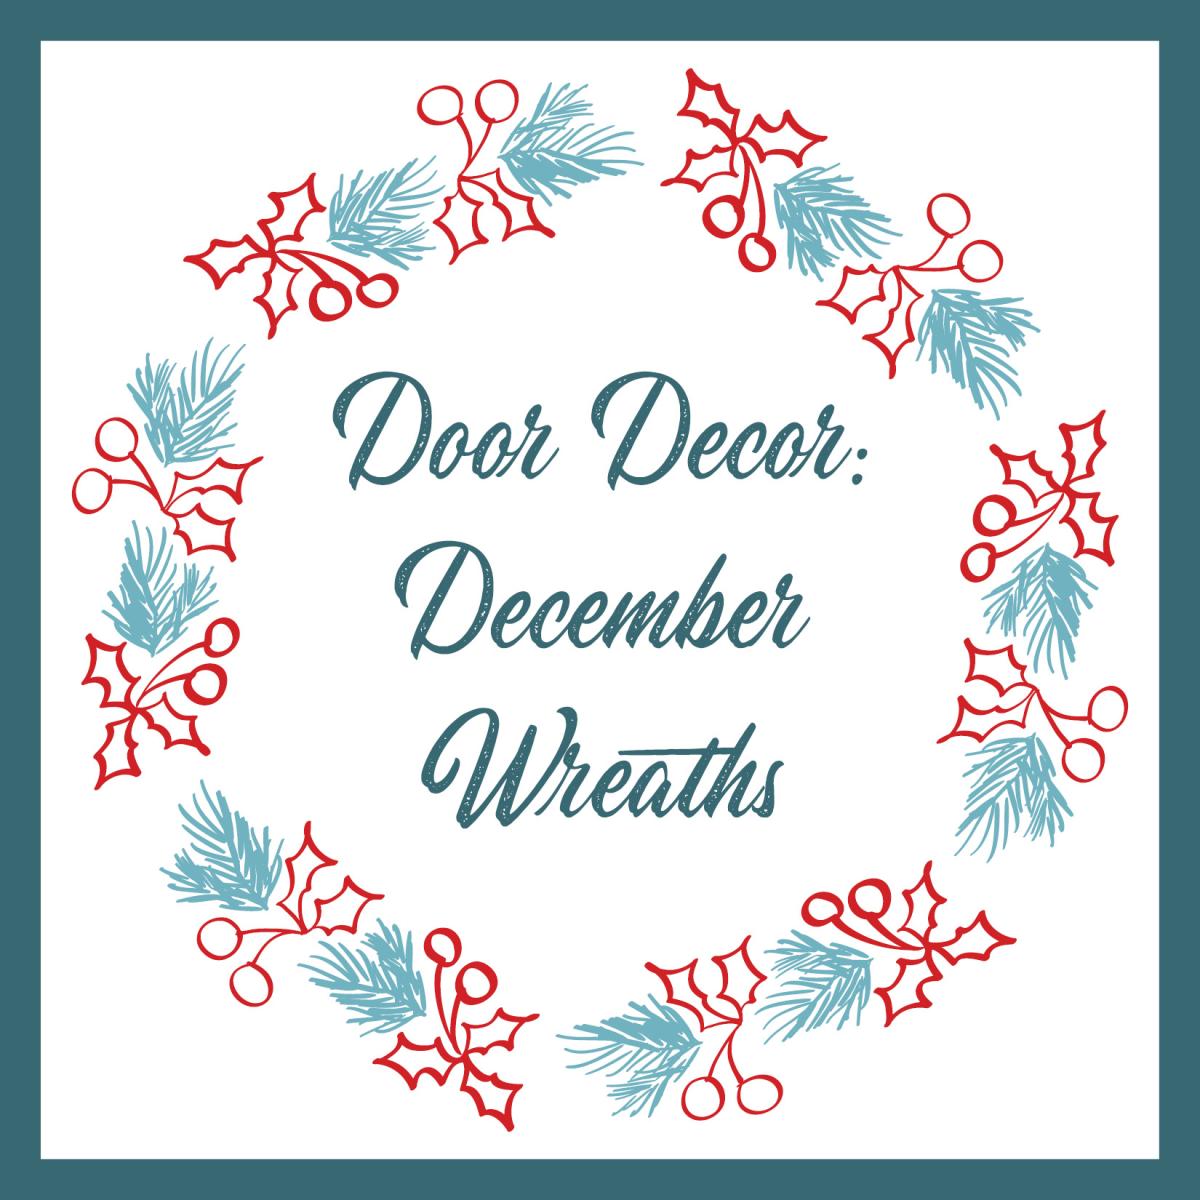 Door Decor: December Wreaths